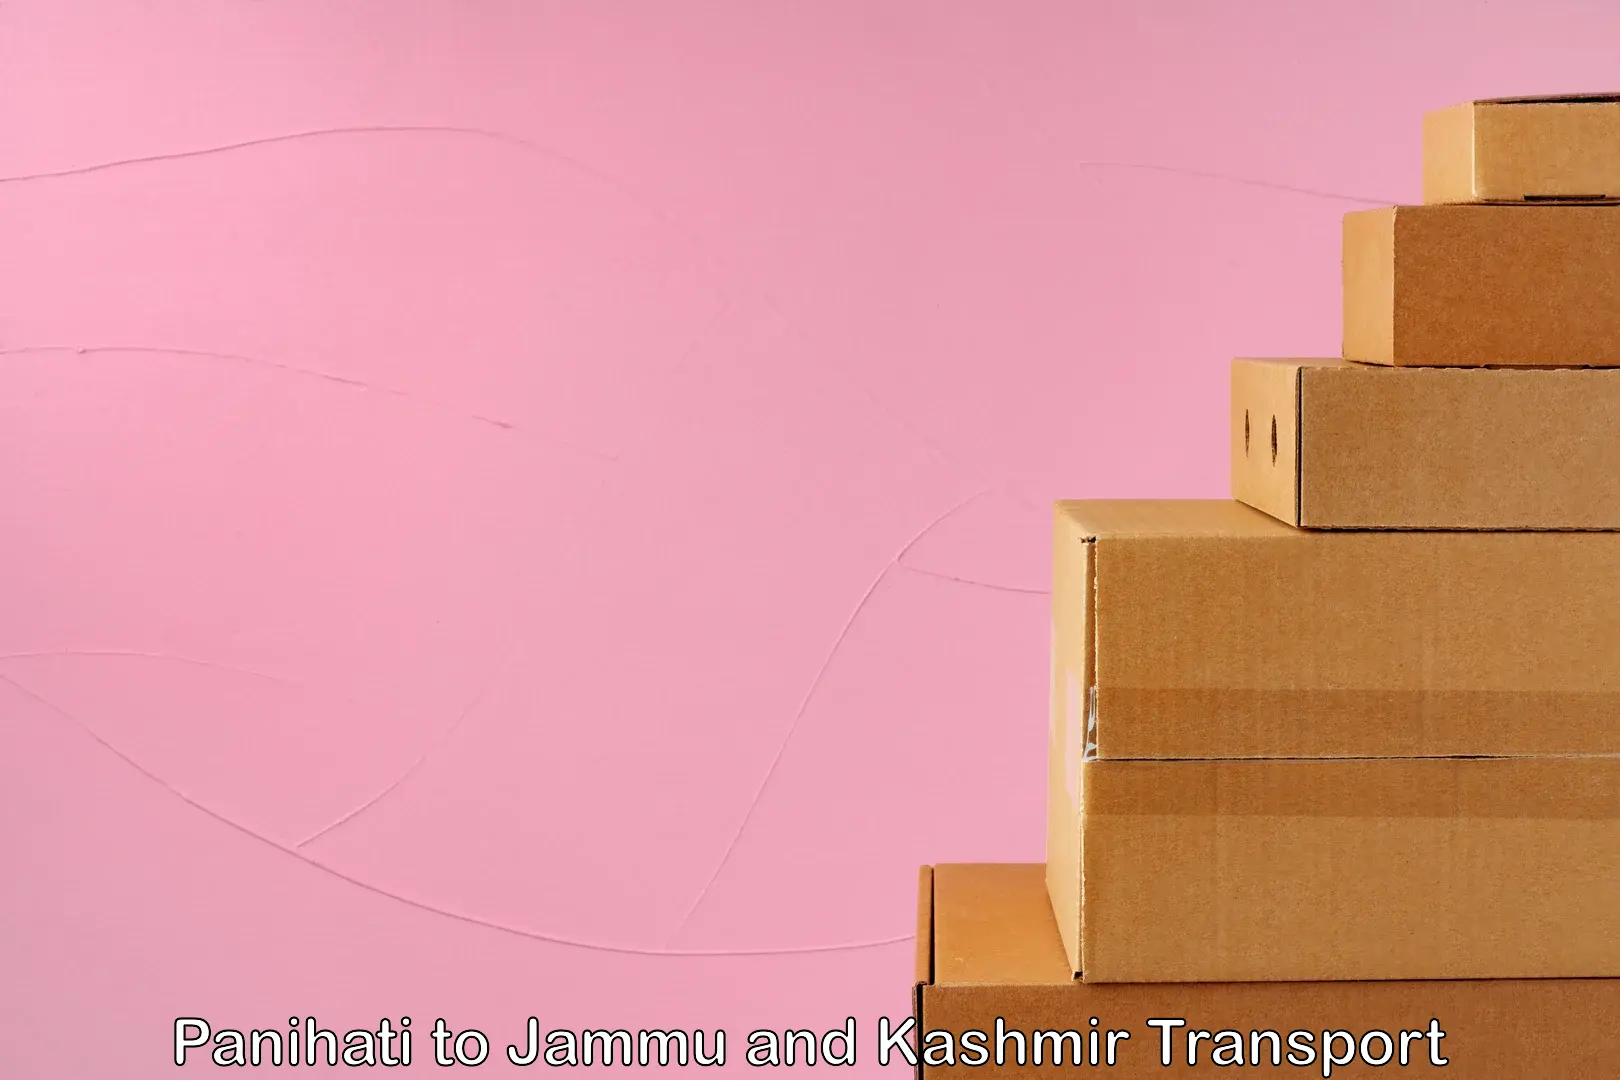 Transportation services Panihati to Jammu and Kashmir